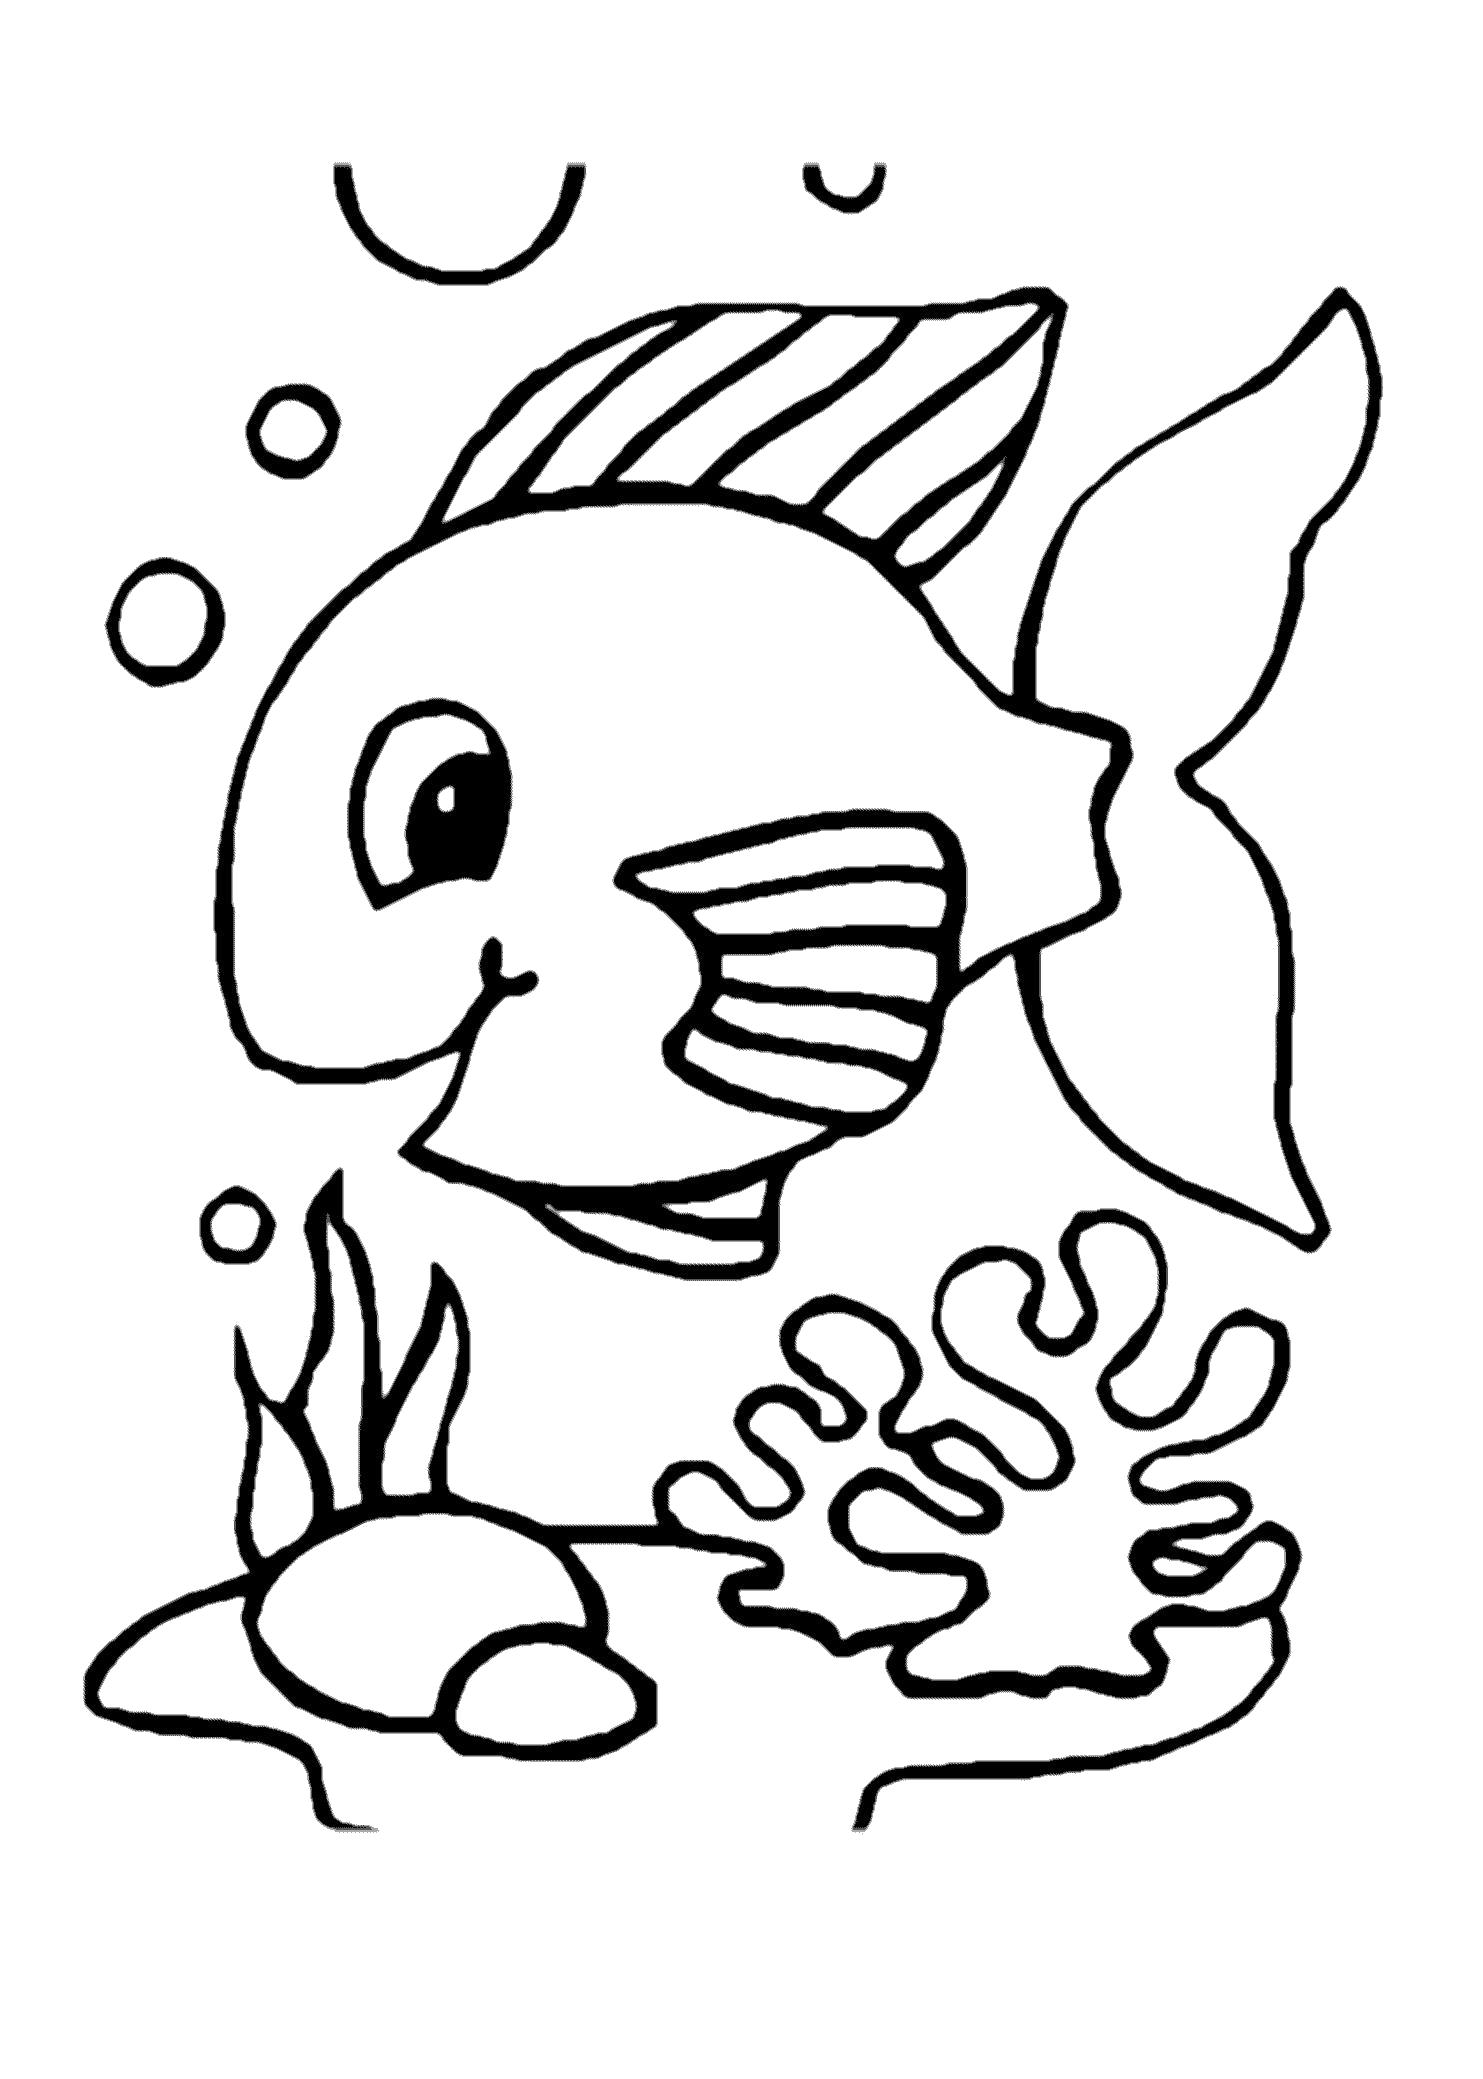 Раскраска рыбки для детей 5 6 лет. Раскраска рыбка. Рыбка раскраска для детей. Рыба раскраска для детей. Рыбка картинка для детей раскраска.